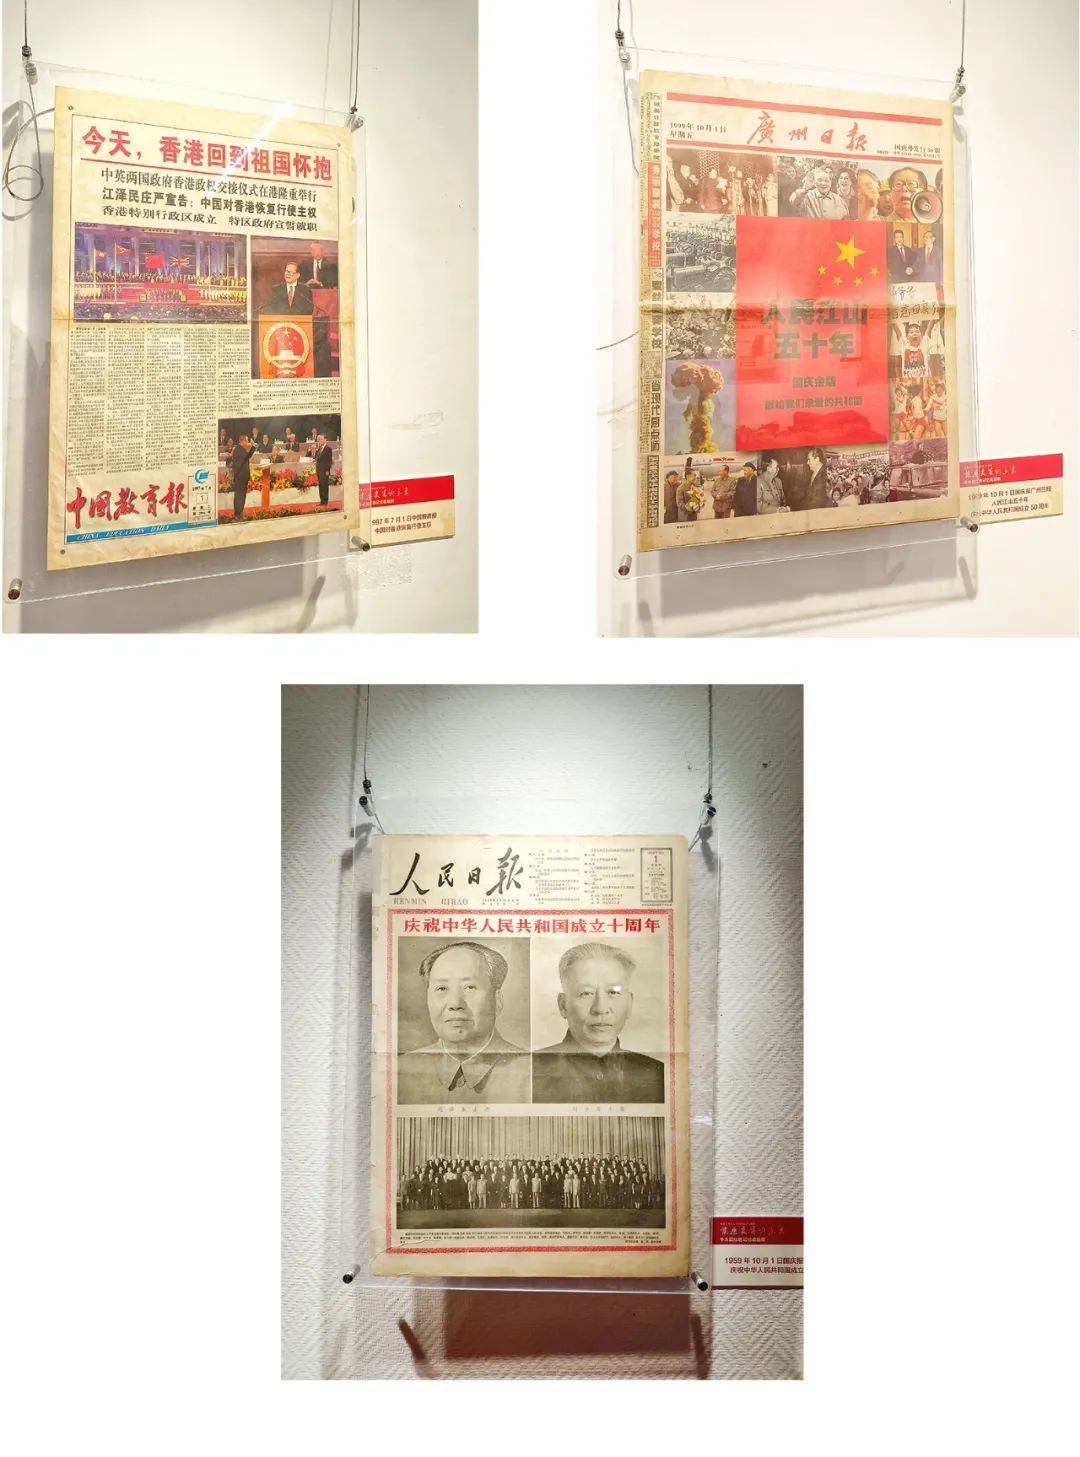 近期展览 | 庆祝建国72周年红色记忆收藏展于月湖群星展厅展出